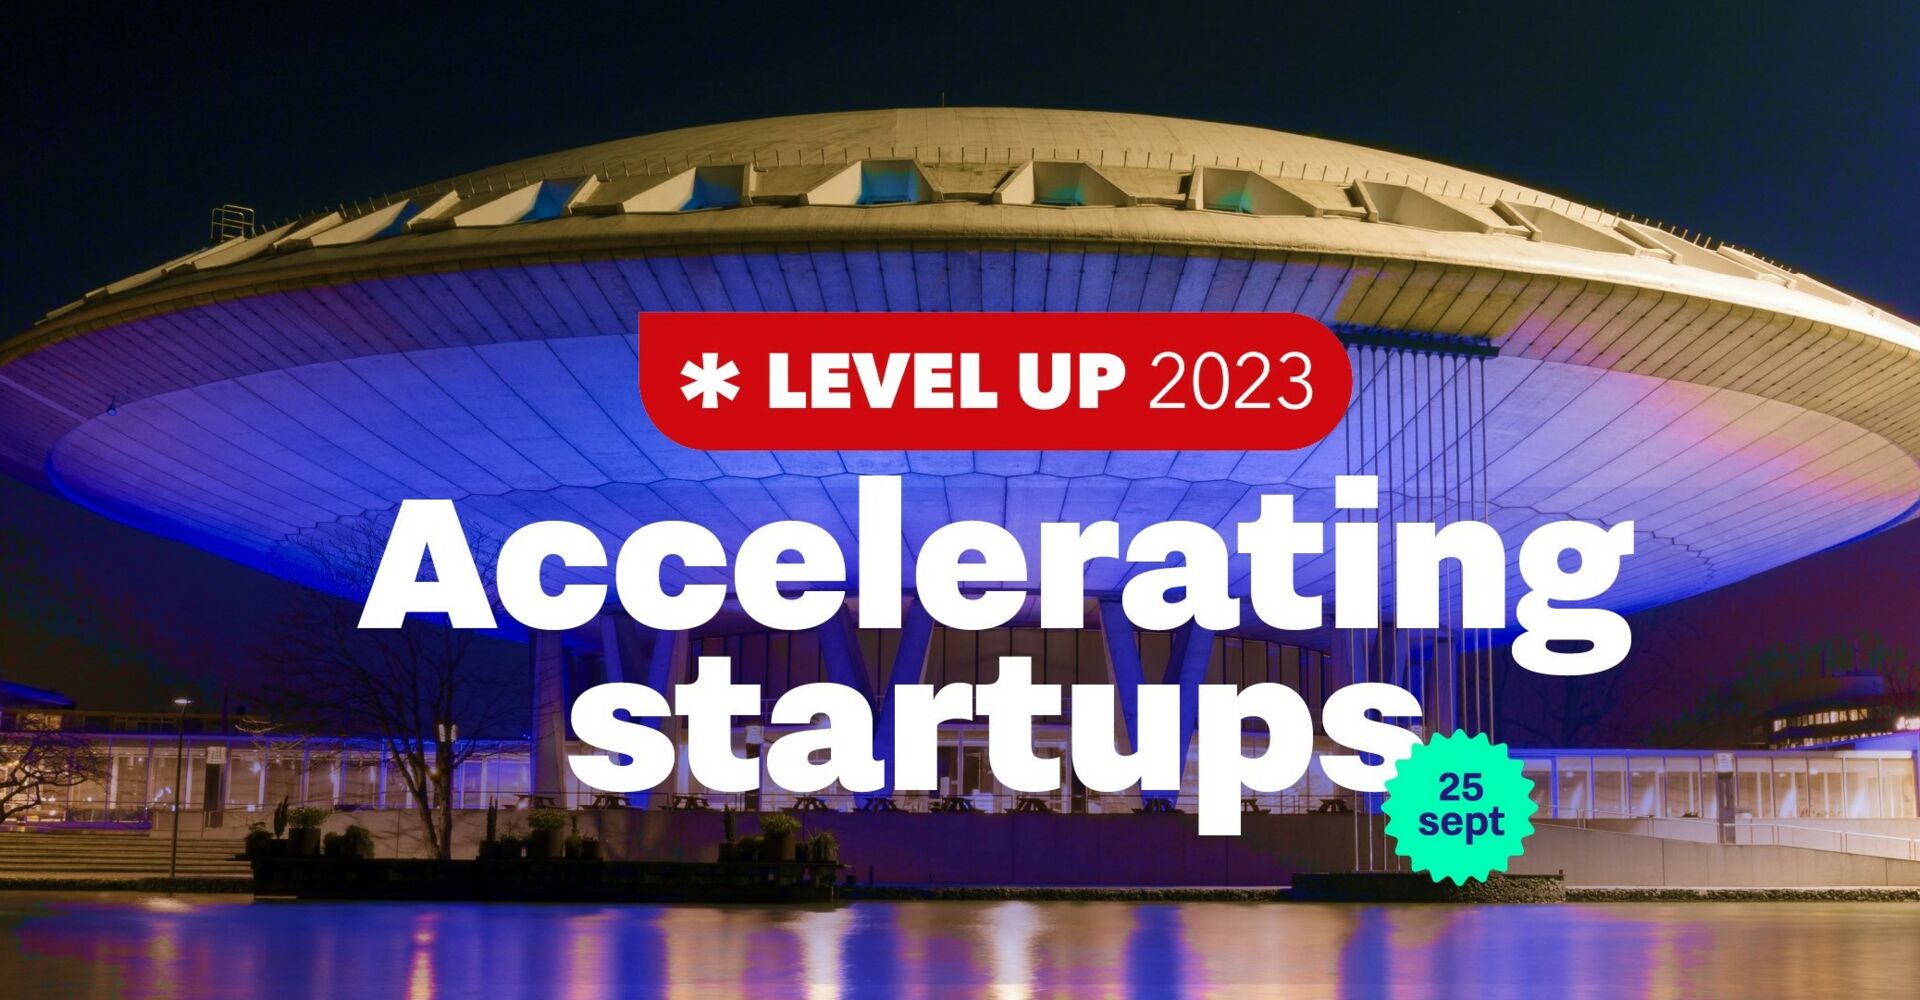 LEVEL UP 2023 - hét event voor de startup-community